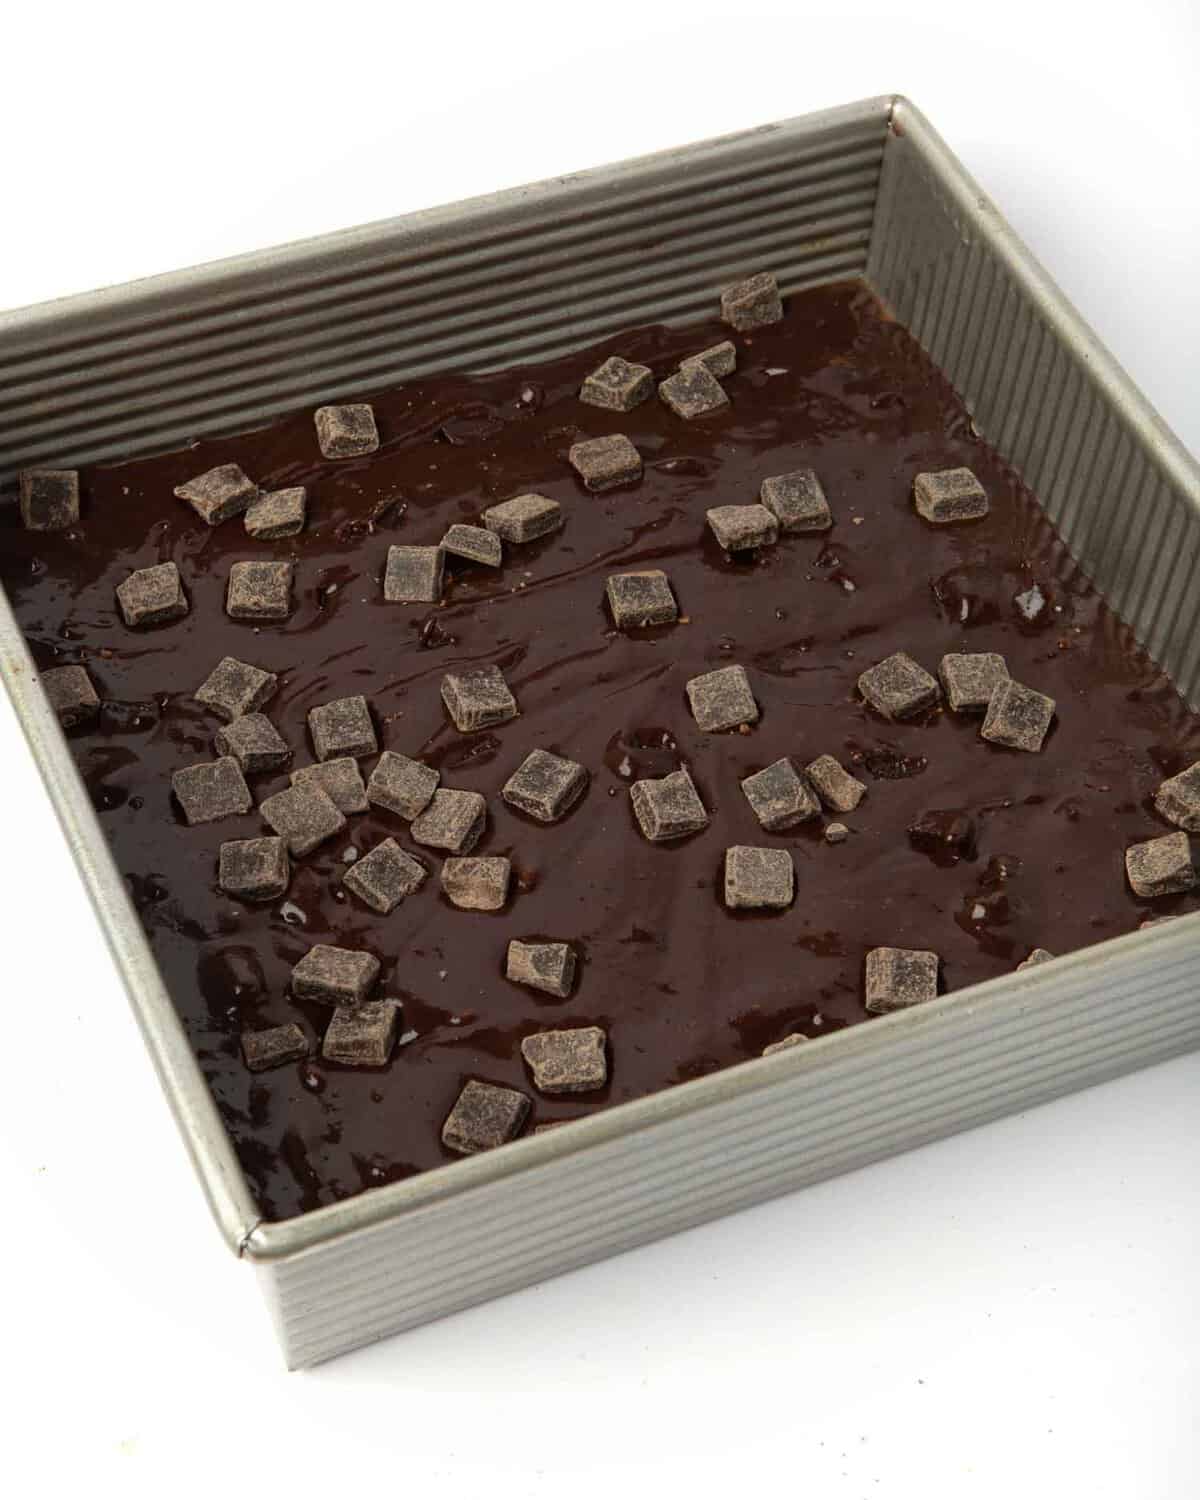 9x9" pan of unbaked brownies